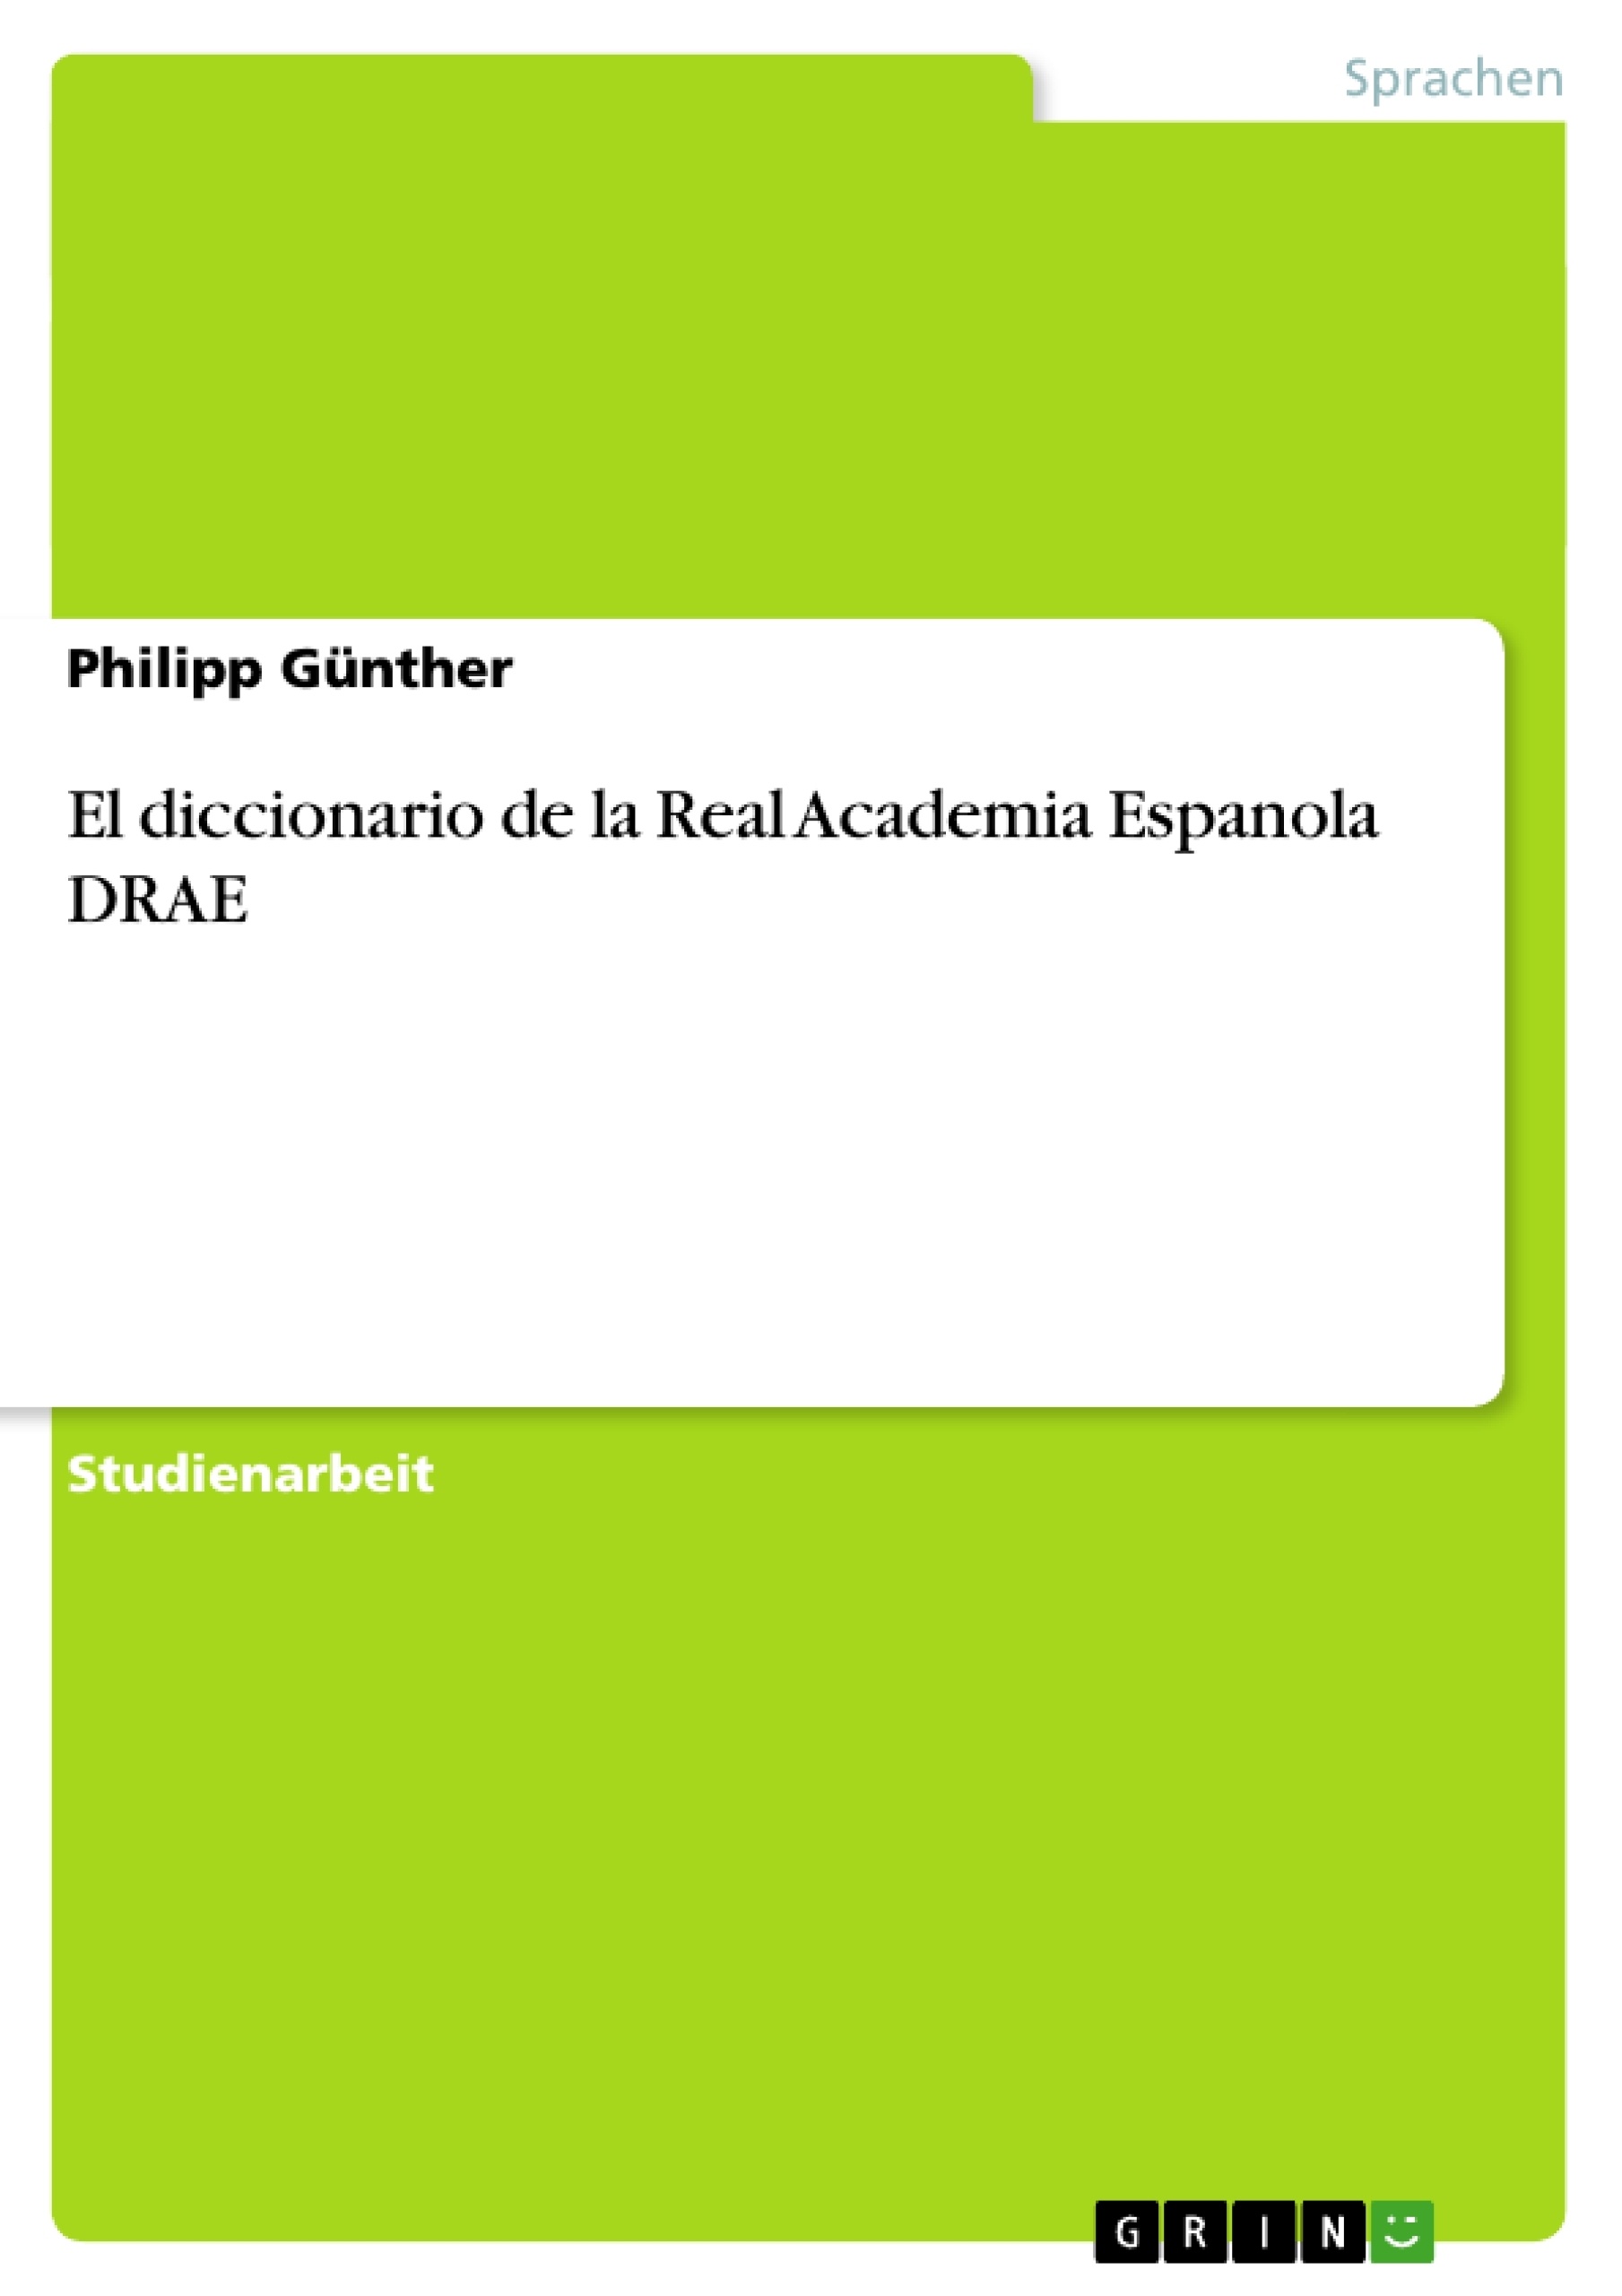 Titel: El diccionario de la Real Academia Espanola DRAE